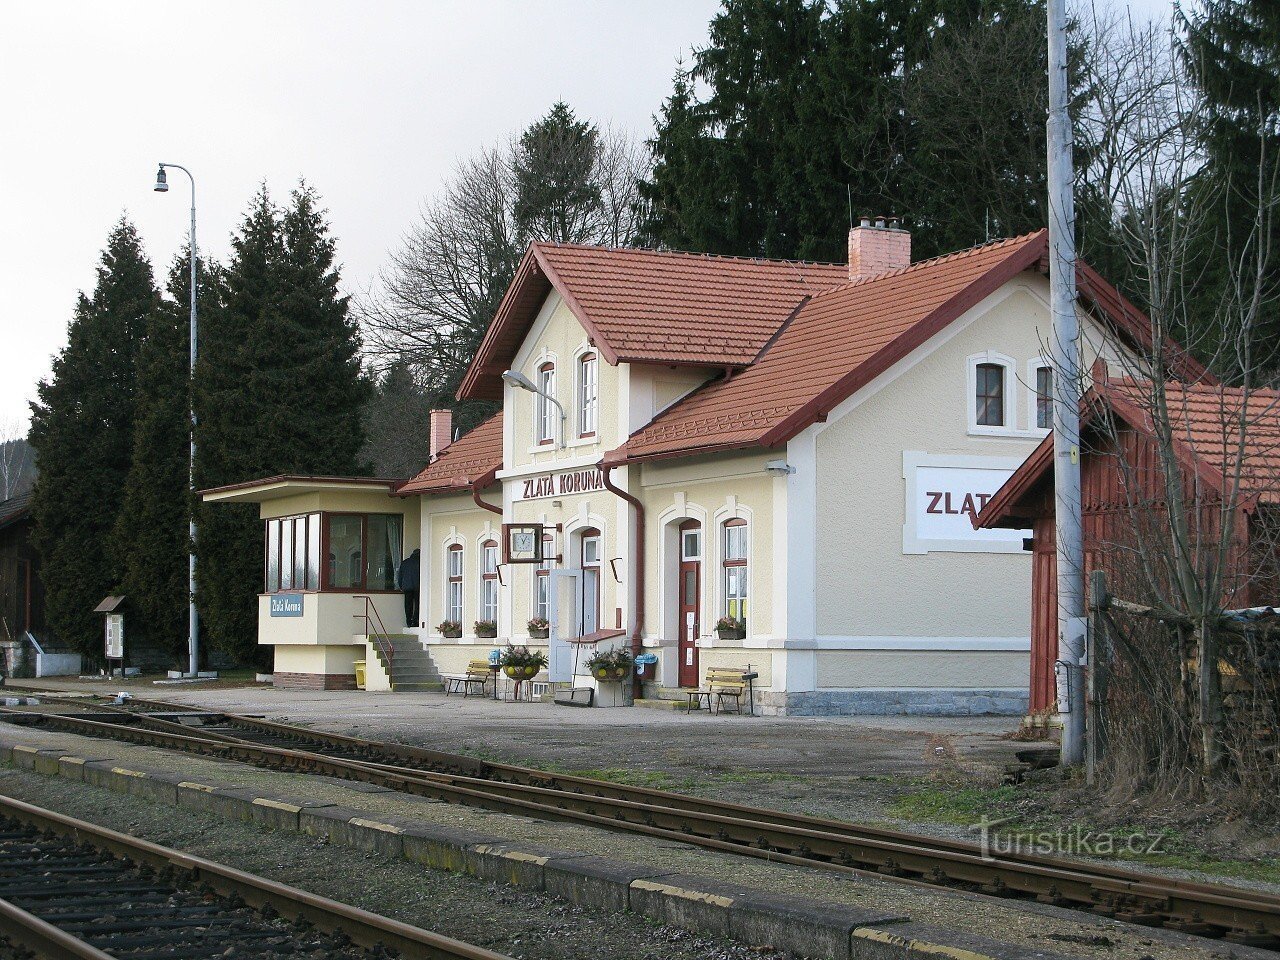 Σιδηρόδρομος Zlatá Koruna - σημείο εκκίνησης του TZ στο όρος Kleť